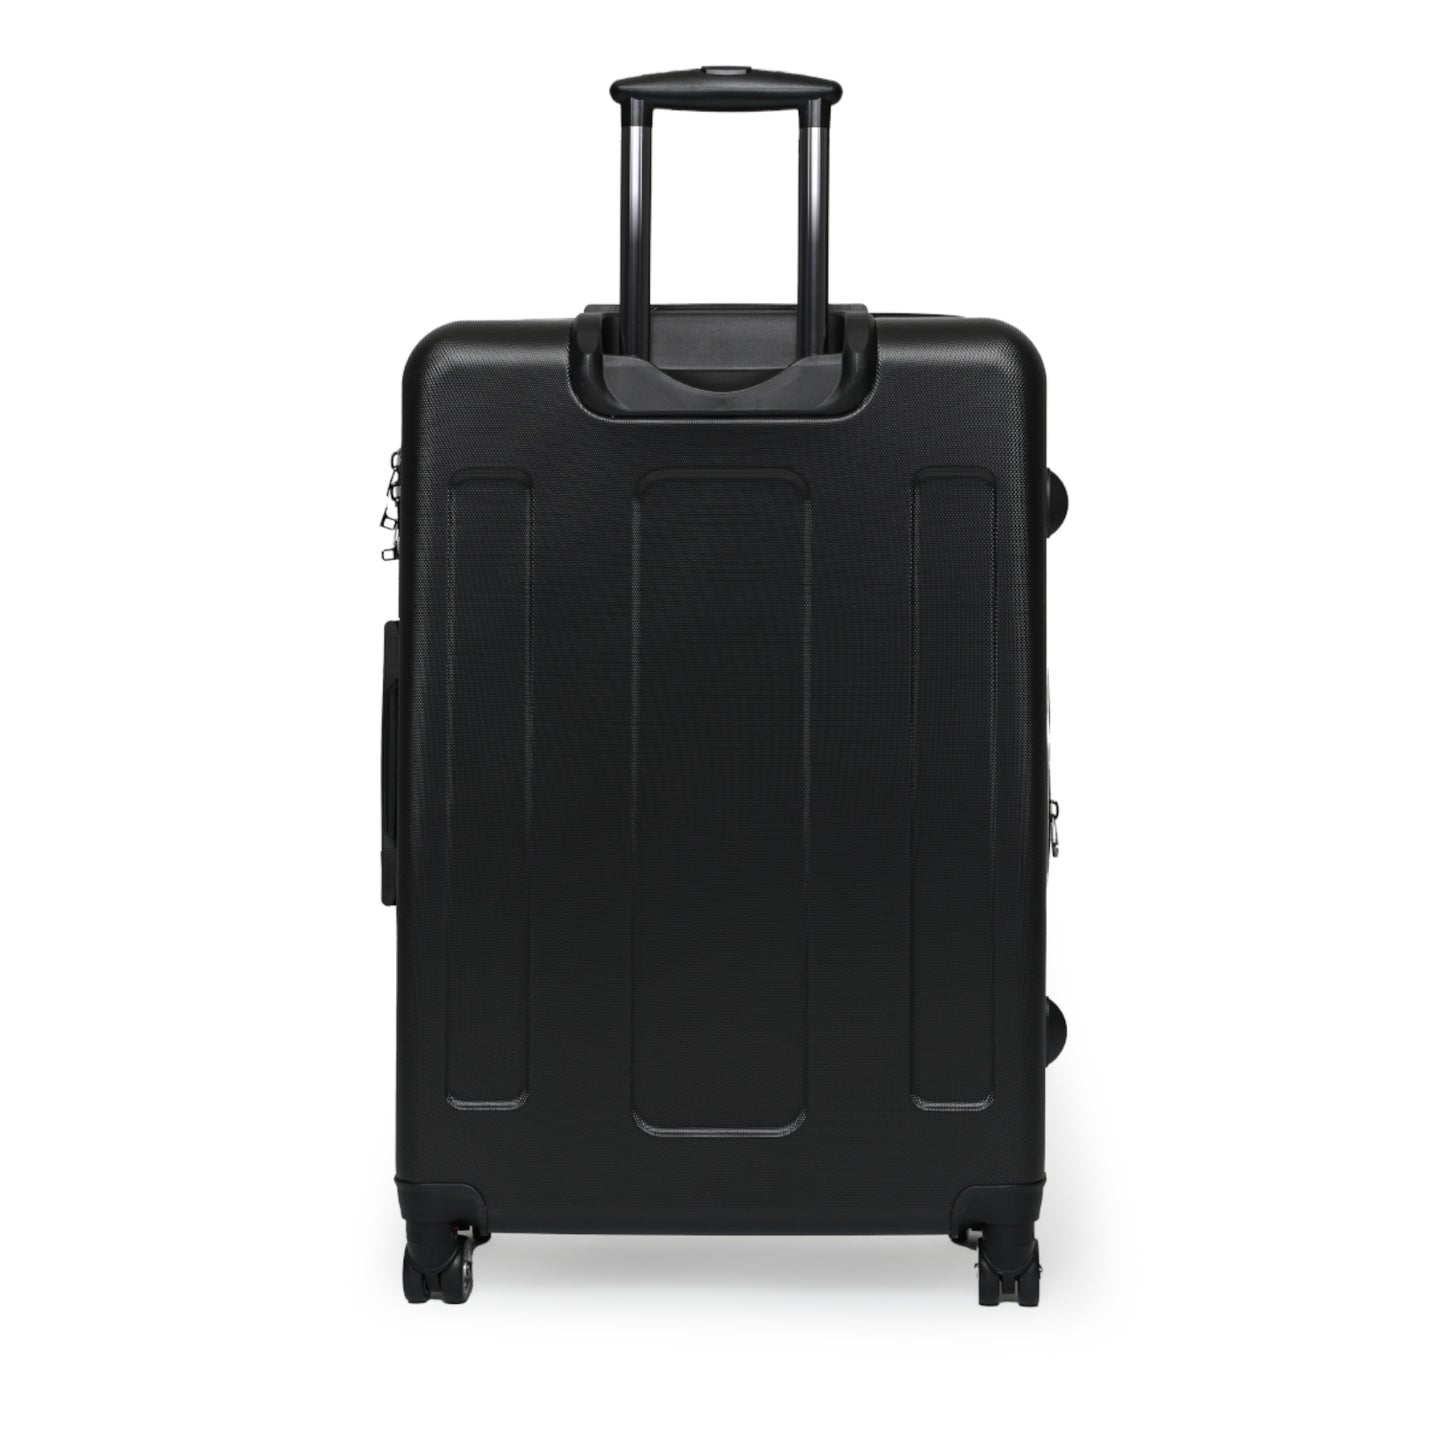 Suitcase,  Boho Travel Accessory, Dark Cottagecore Decor, Whimsigoth Aesthetic